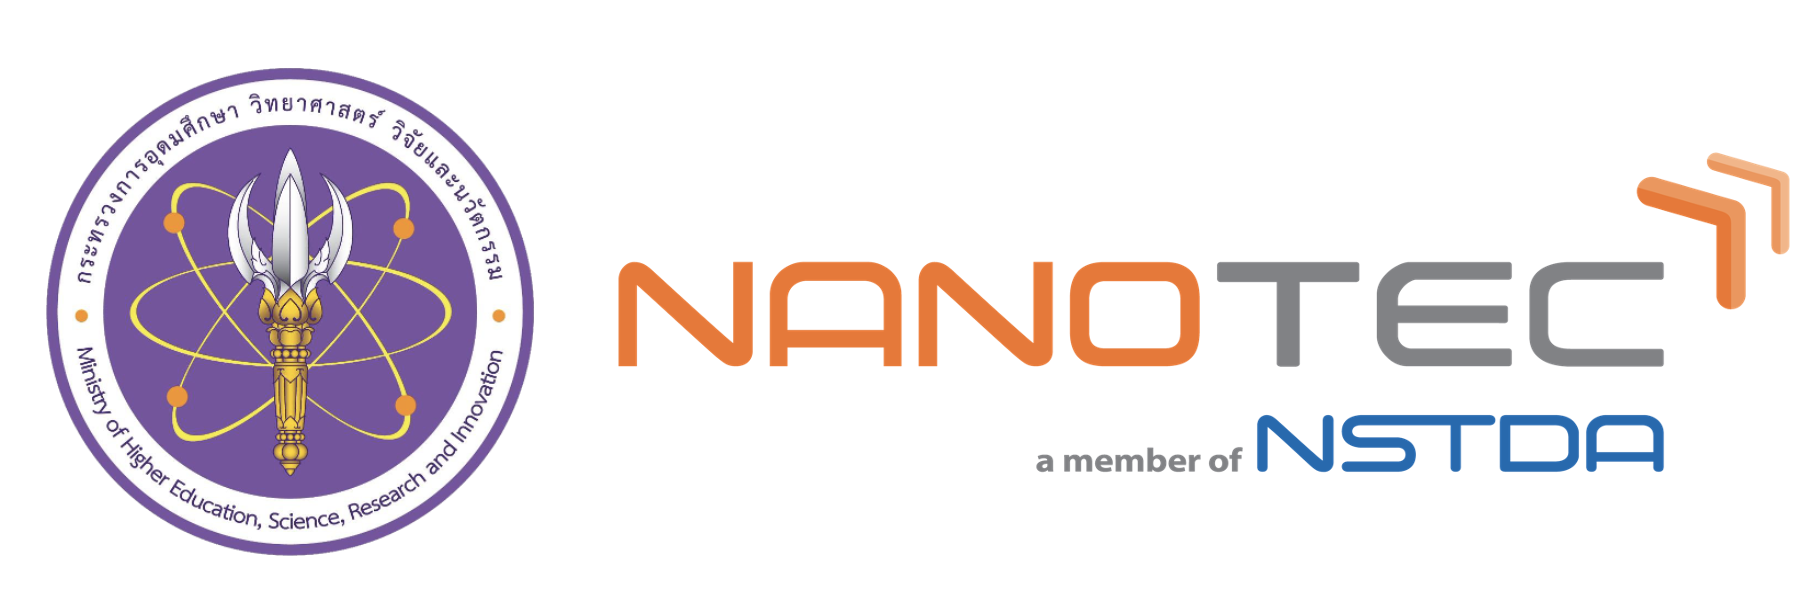 ศูนย์นาโนเทคโนโลยีแห่งชาติ (NANOTEC)